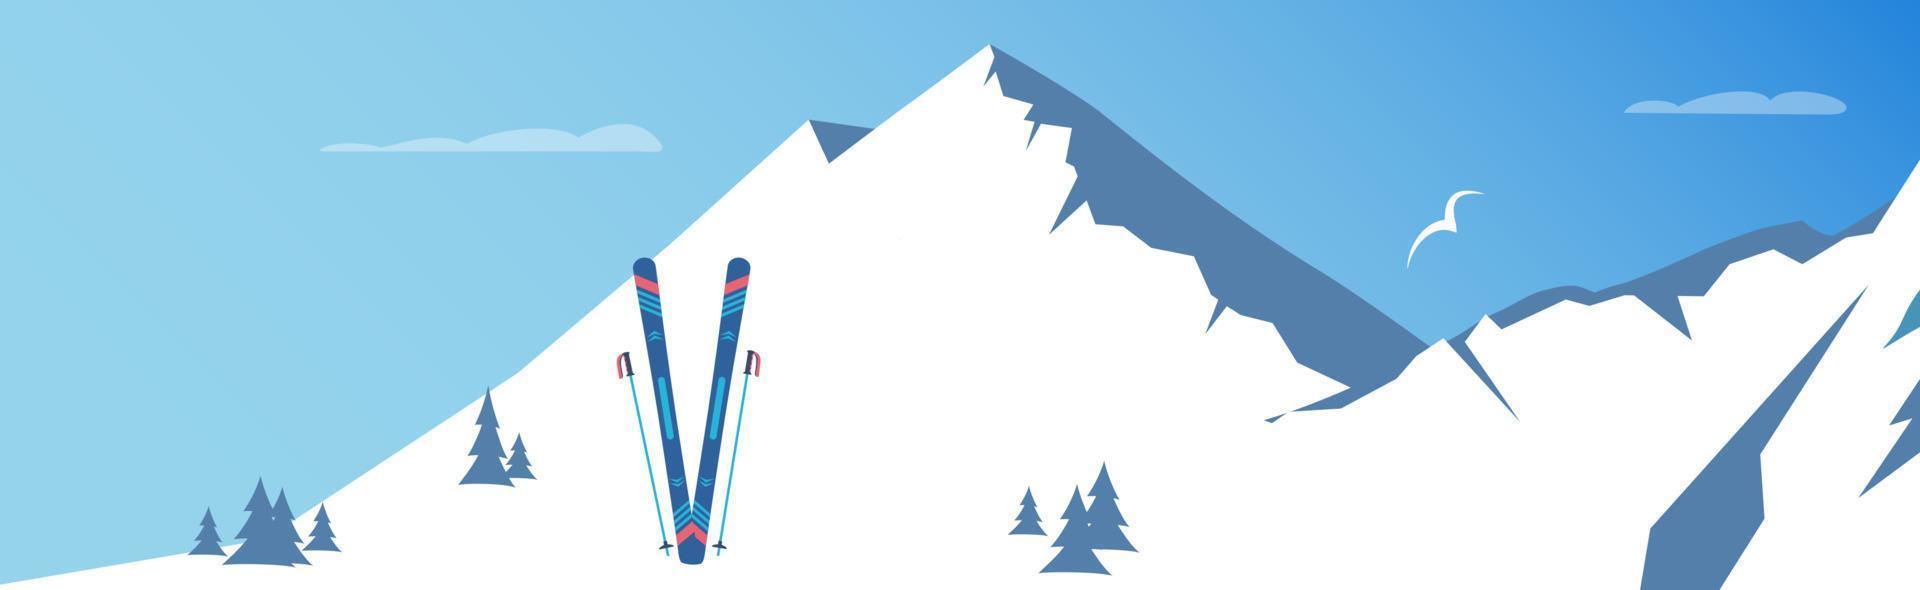 Skifahren und schneebedeckte Berge. Wintersport. Vektor-Illustration. vektor